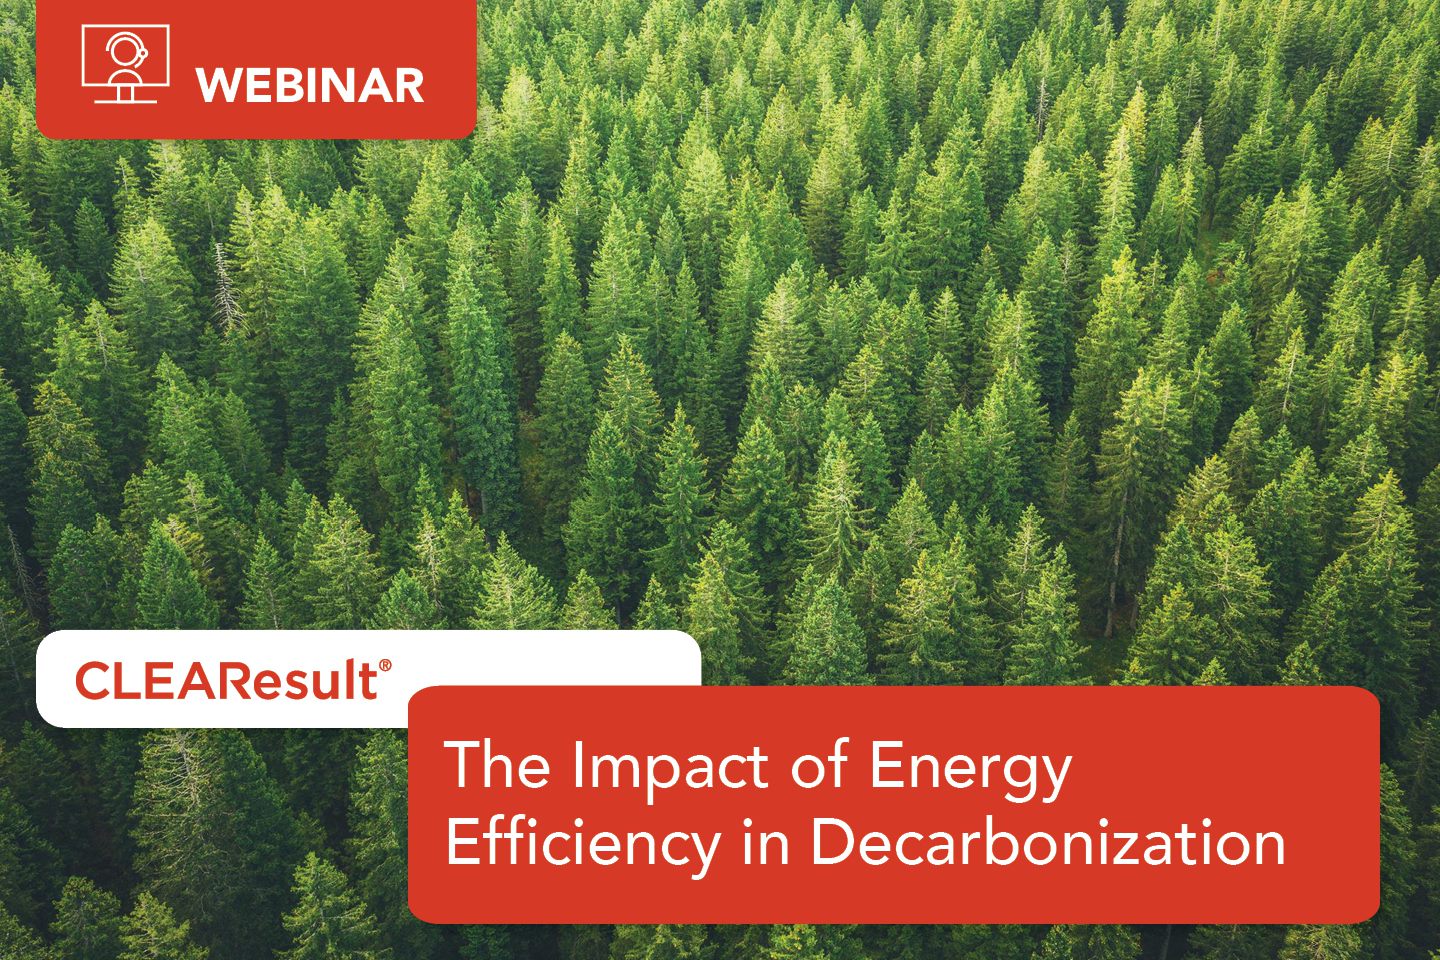 Key takeaways from The Impact of Energy Efficiency in Decarbonization webinar